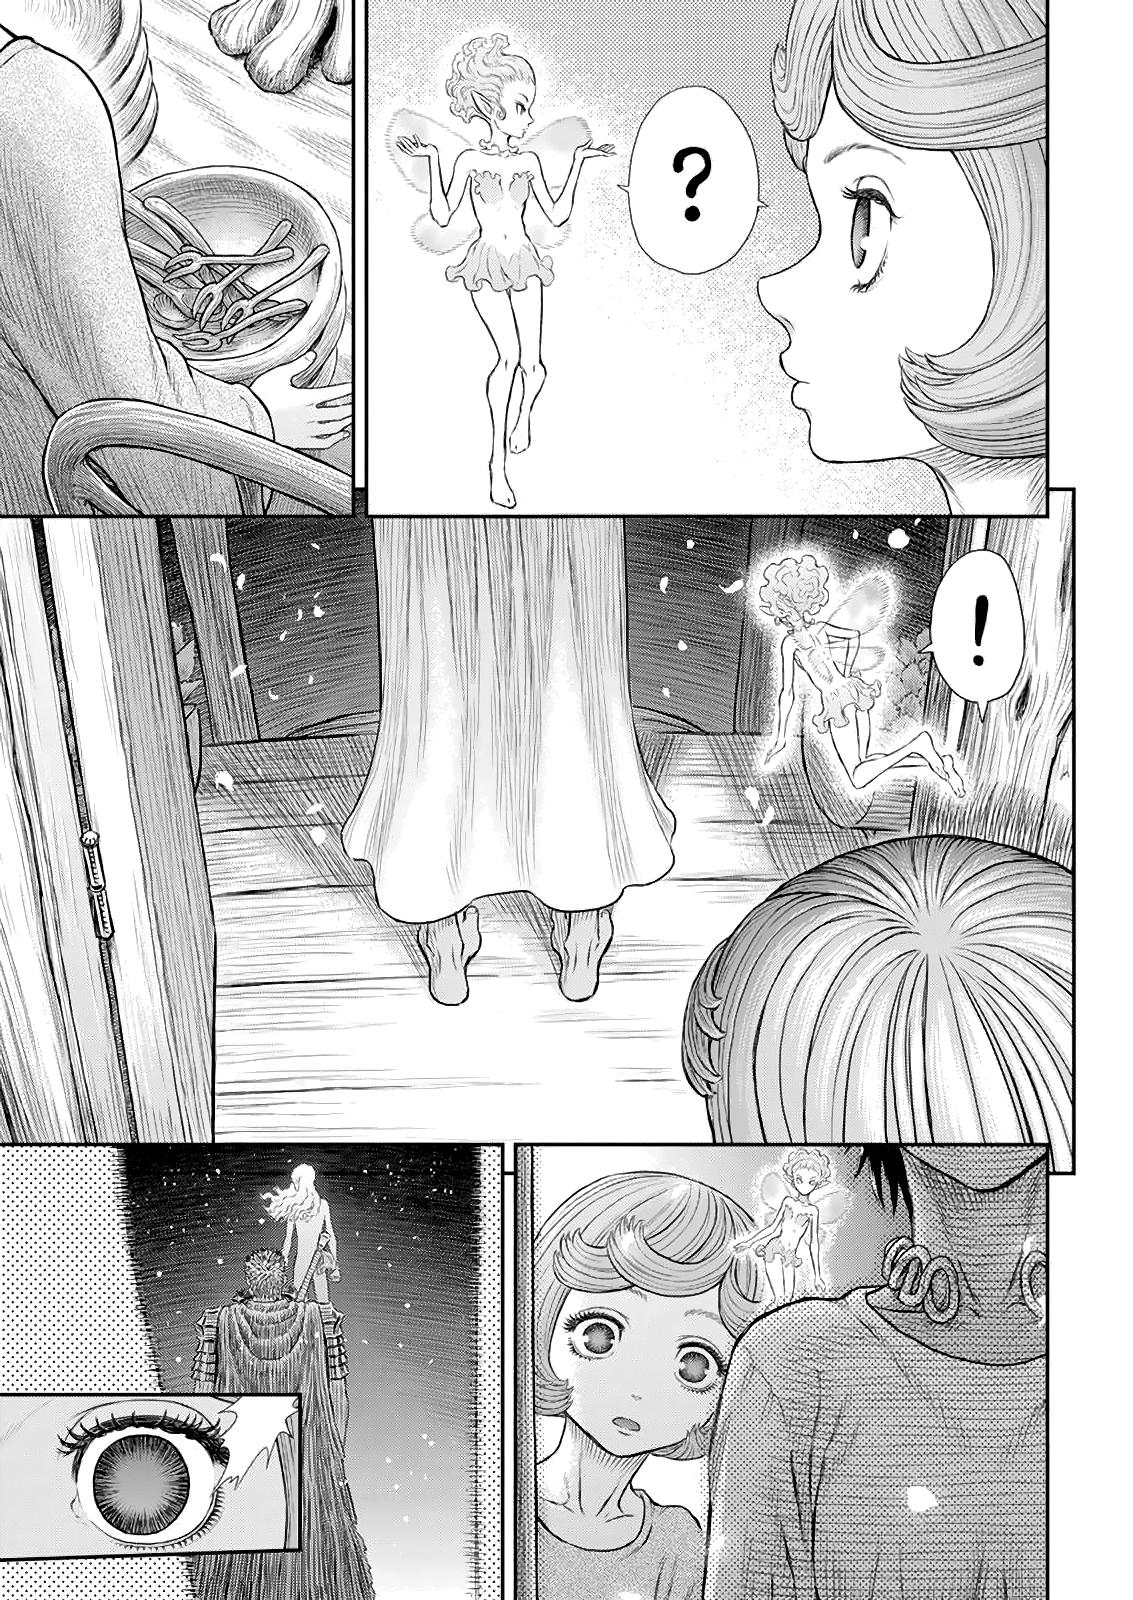 Berserk Manga Chapter 365 image 06